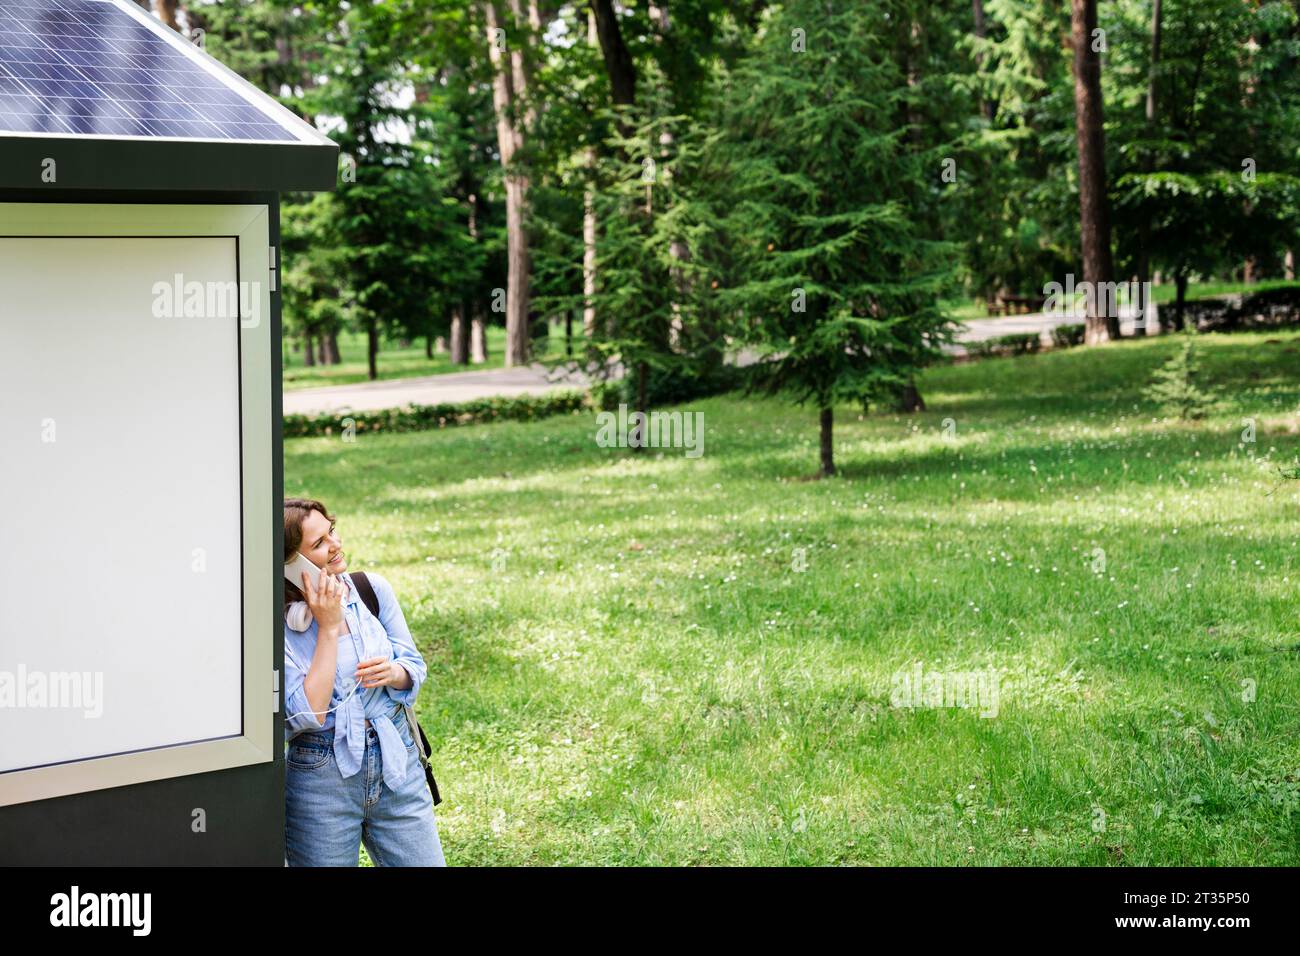 Frau, die auf dem Handy spricht, lehnt sich an die Solarladestelle im Park Stockfoto